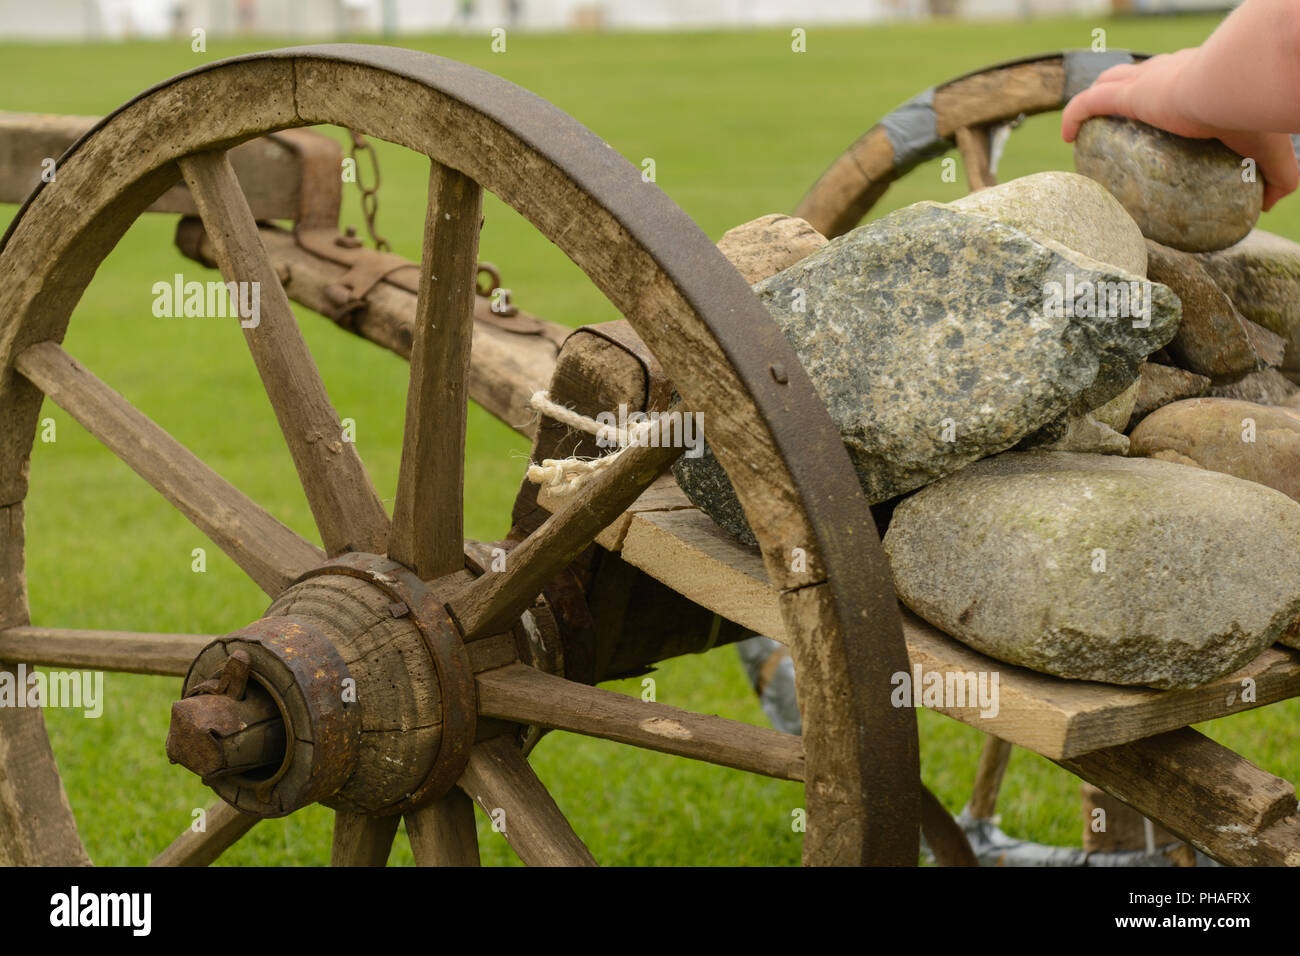 Le pietre sono caricati su un vecchio carrello di legno - close-up Foto Stock